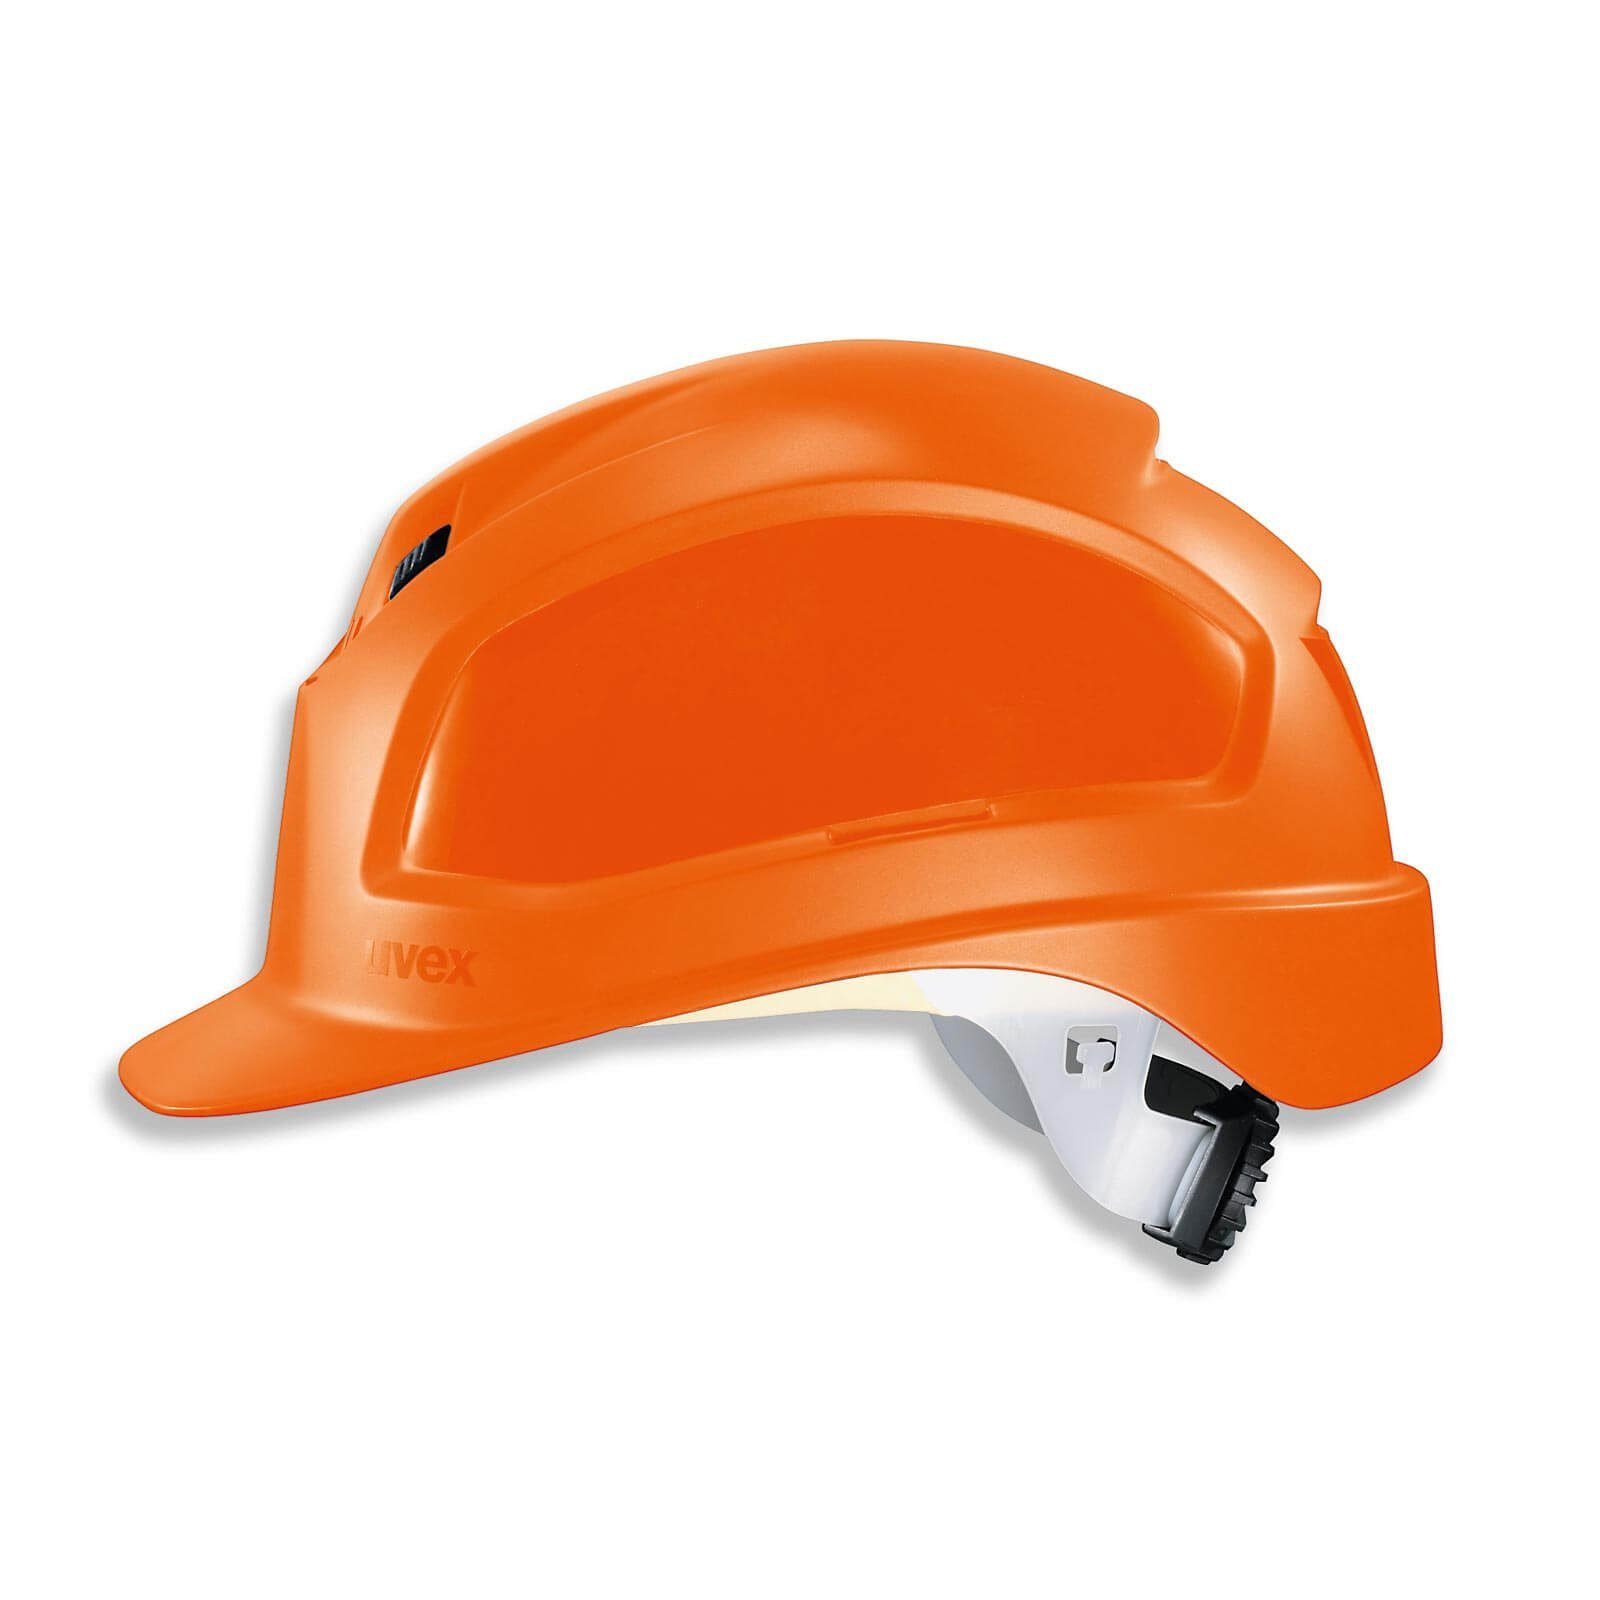 Uvex Schutzhelm pheos B-WR - orange Arbeitsschutz-Helm, Baustellenhelm, Bauhelm